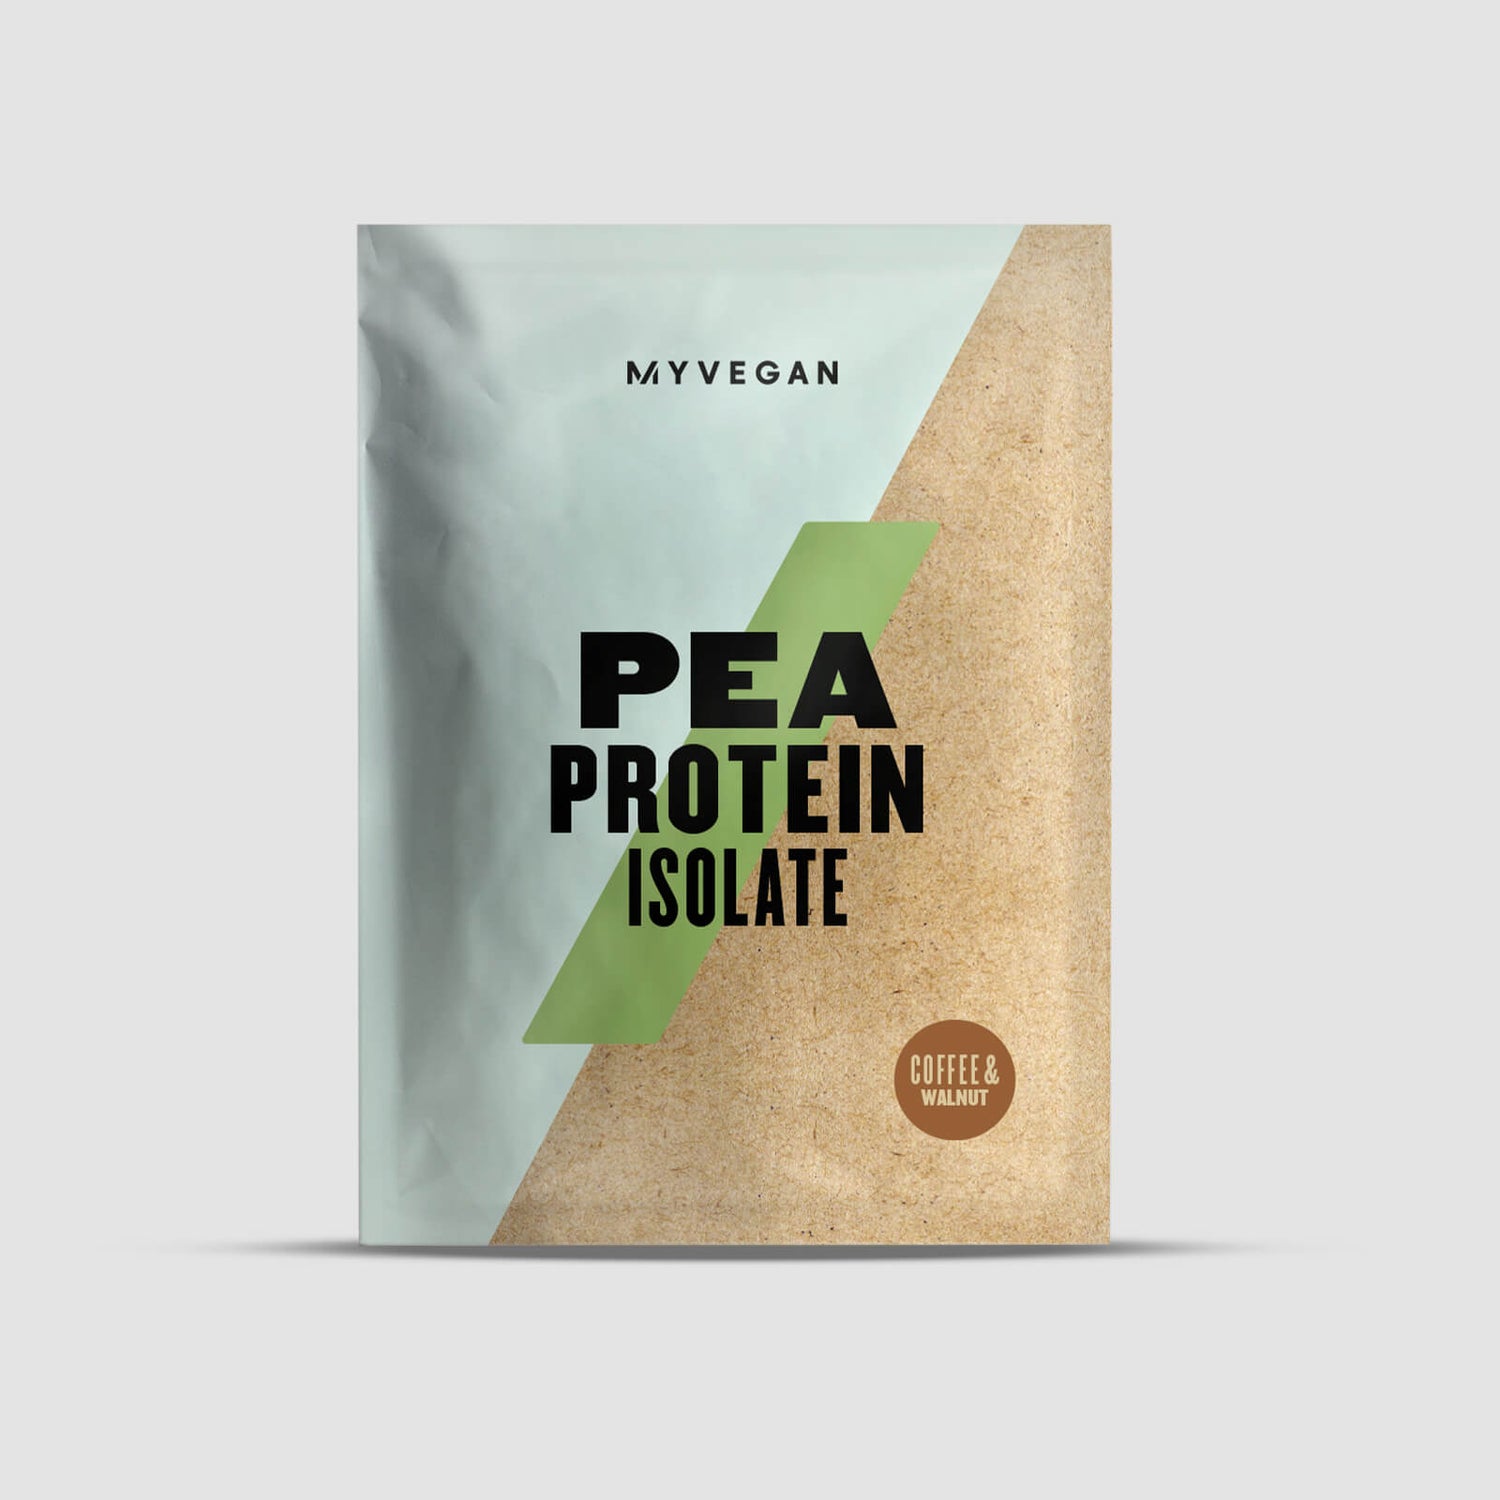 Myvegan Proteine Isolate del Pisello - 30g - Caffé e noci